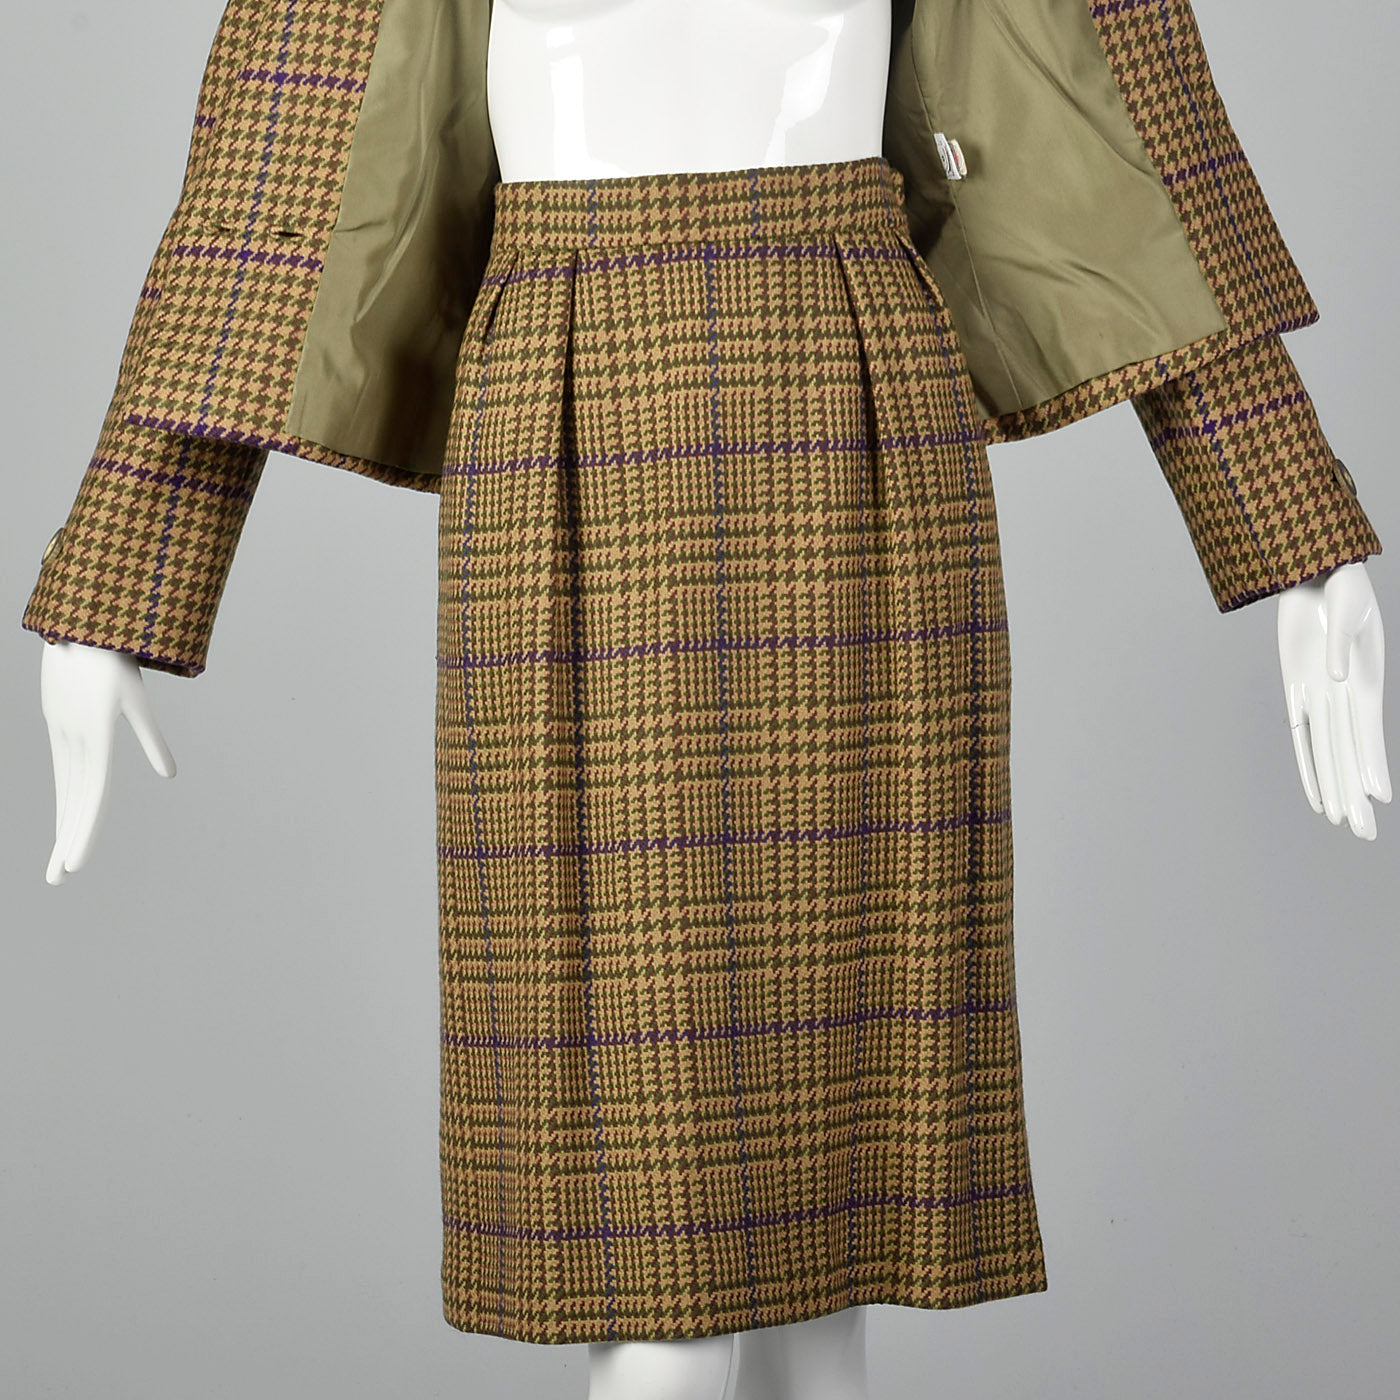 1980s Bill Blass Skirt Suit